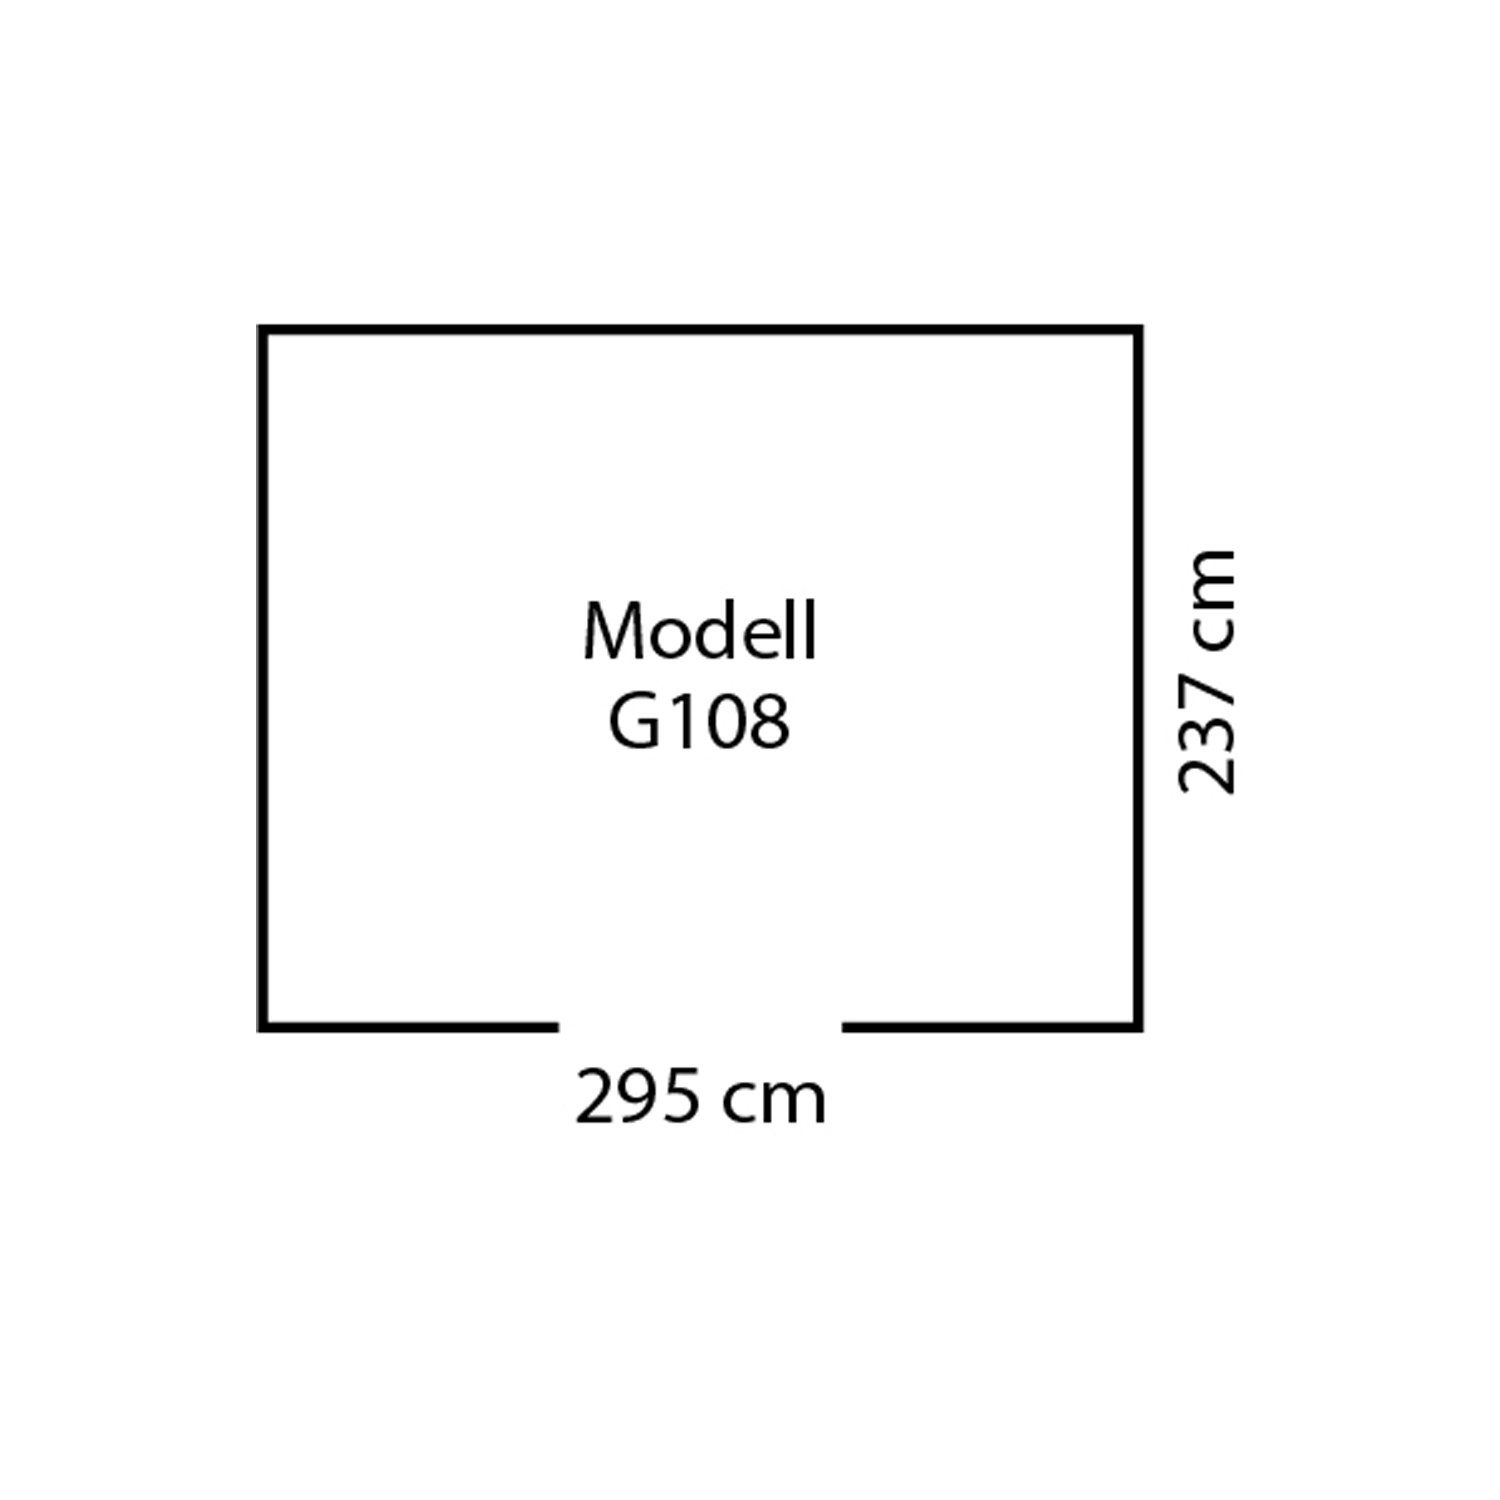 Globel Industries Gerätehaus 108" "Dream anthrazit Metall-Gartenmanager / m) (7,61